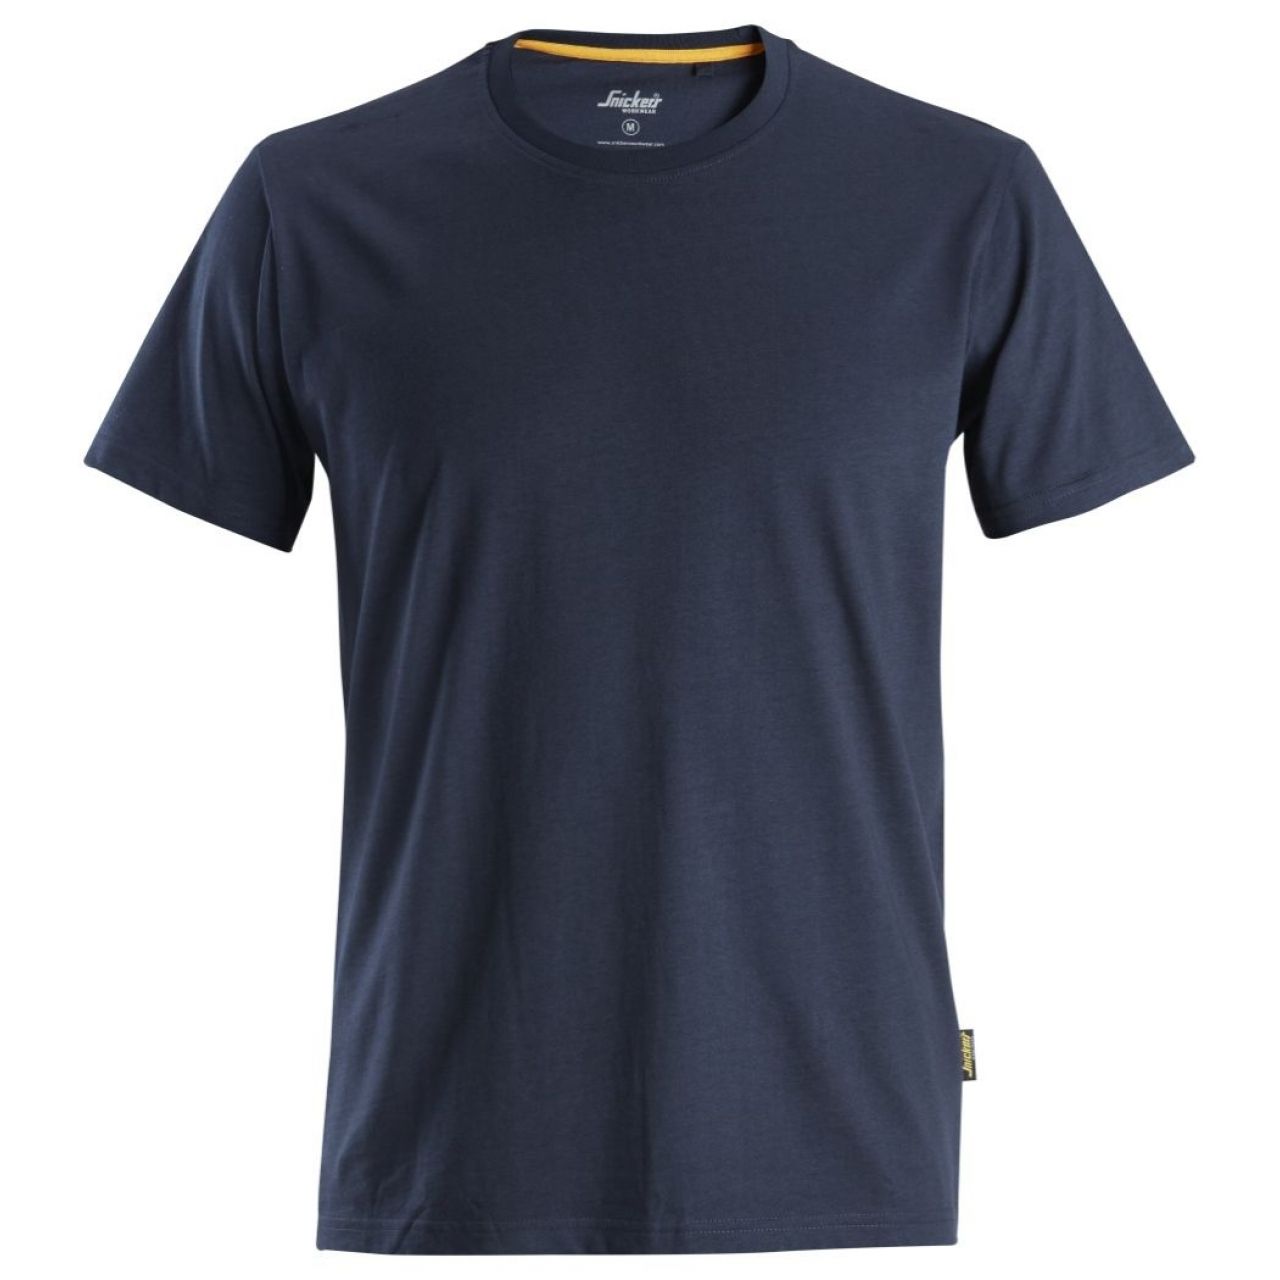 Camiseta de algodón orgánico AllroundWork Azul marino talla L